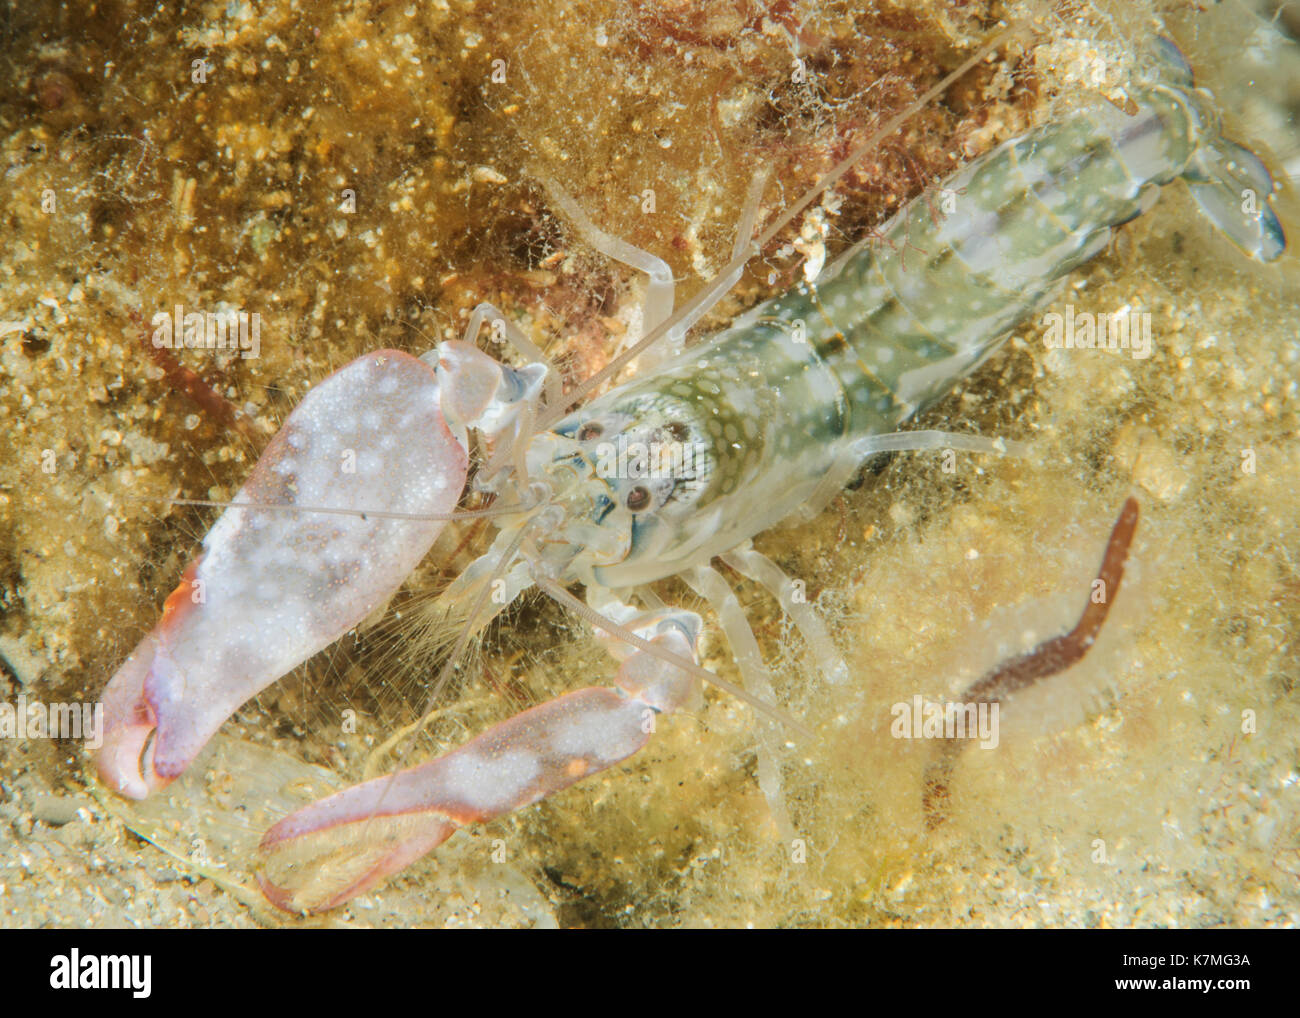 New Zealand Snapping Shrimp Stock Photo